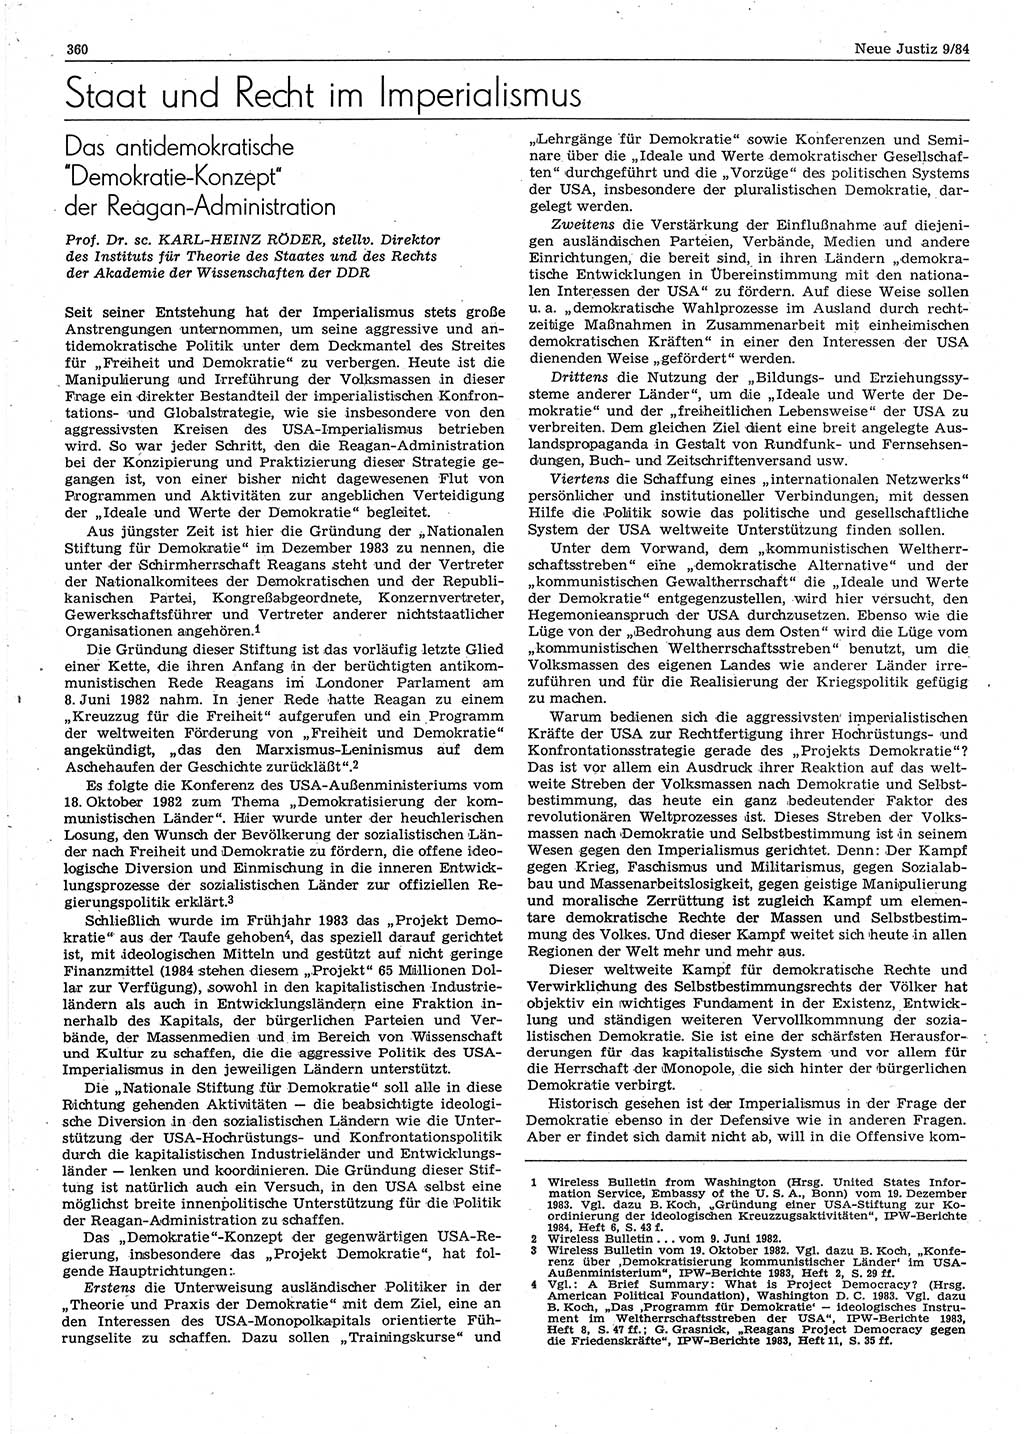 Neue Justiz (NJ), Zeitschrift für sozialistisches Recht und Gesetzlichkeit [Deutsche Demokratische Republik (DDR)], 38. Jahrgang 1984, Seite 360 (NJ DDR 1984, S. 360)